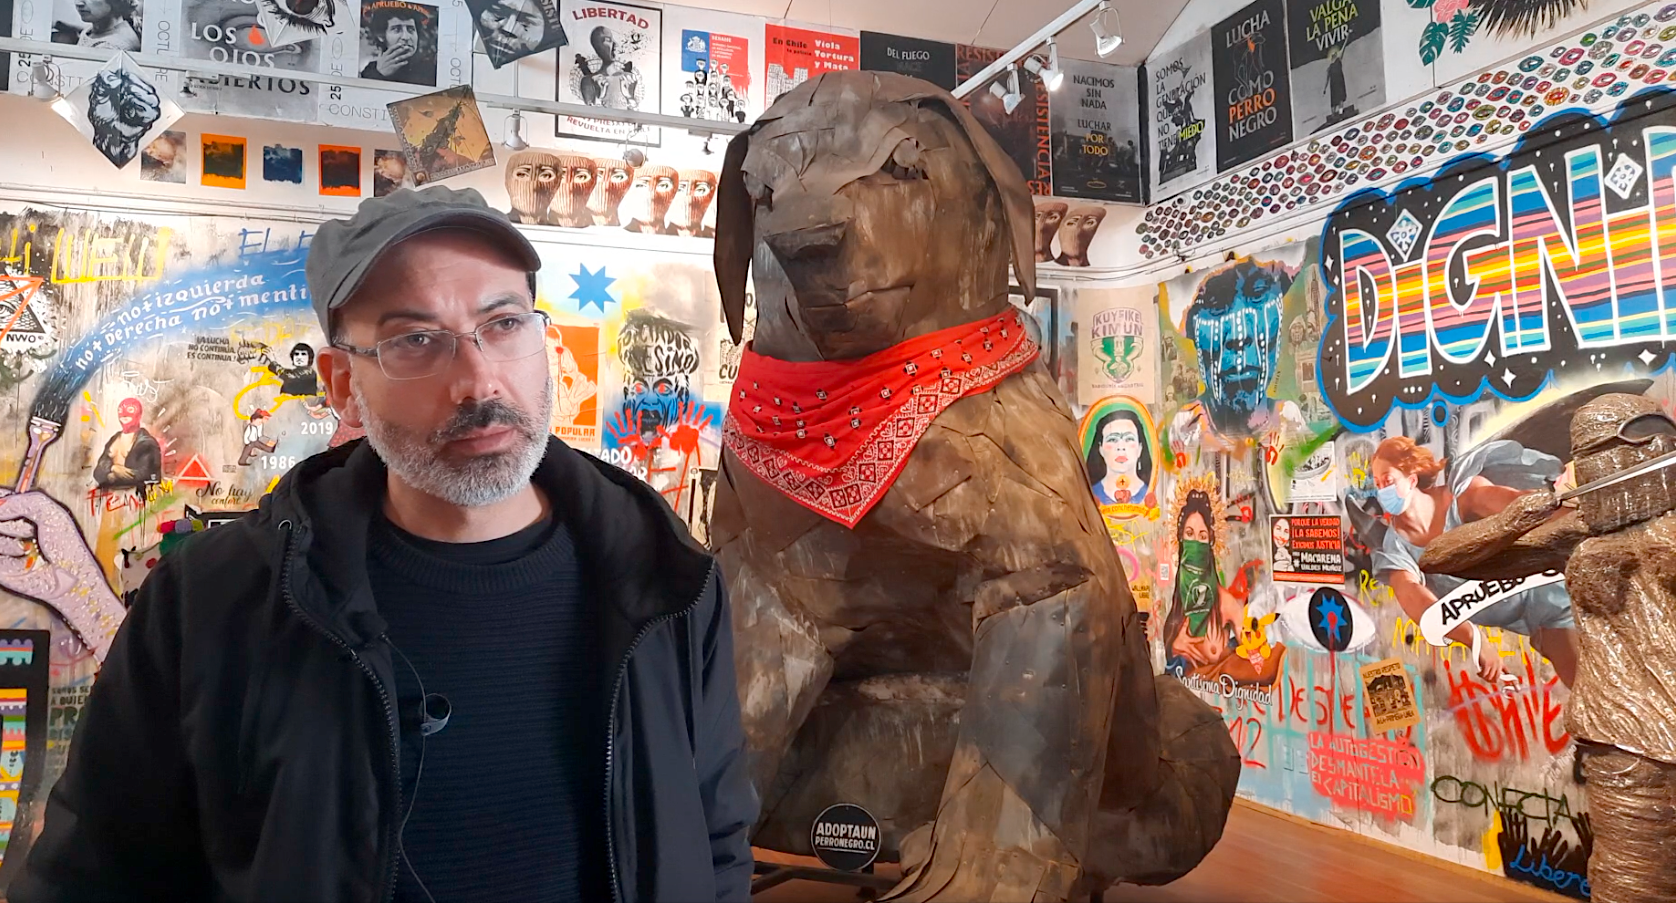 El museólogo y curador del Museo del Estallido, Marcel Solá, posa adelante de su otra gran obra: la escultura del perro Matapacos